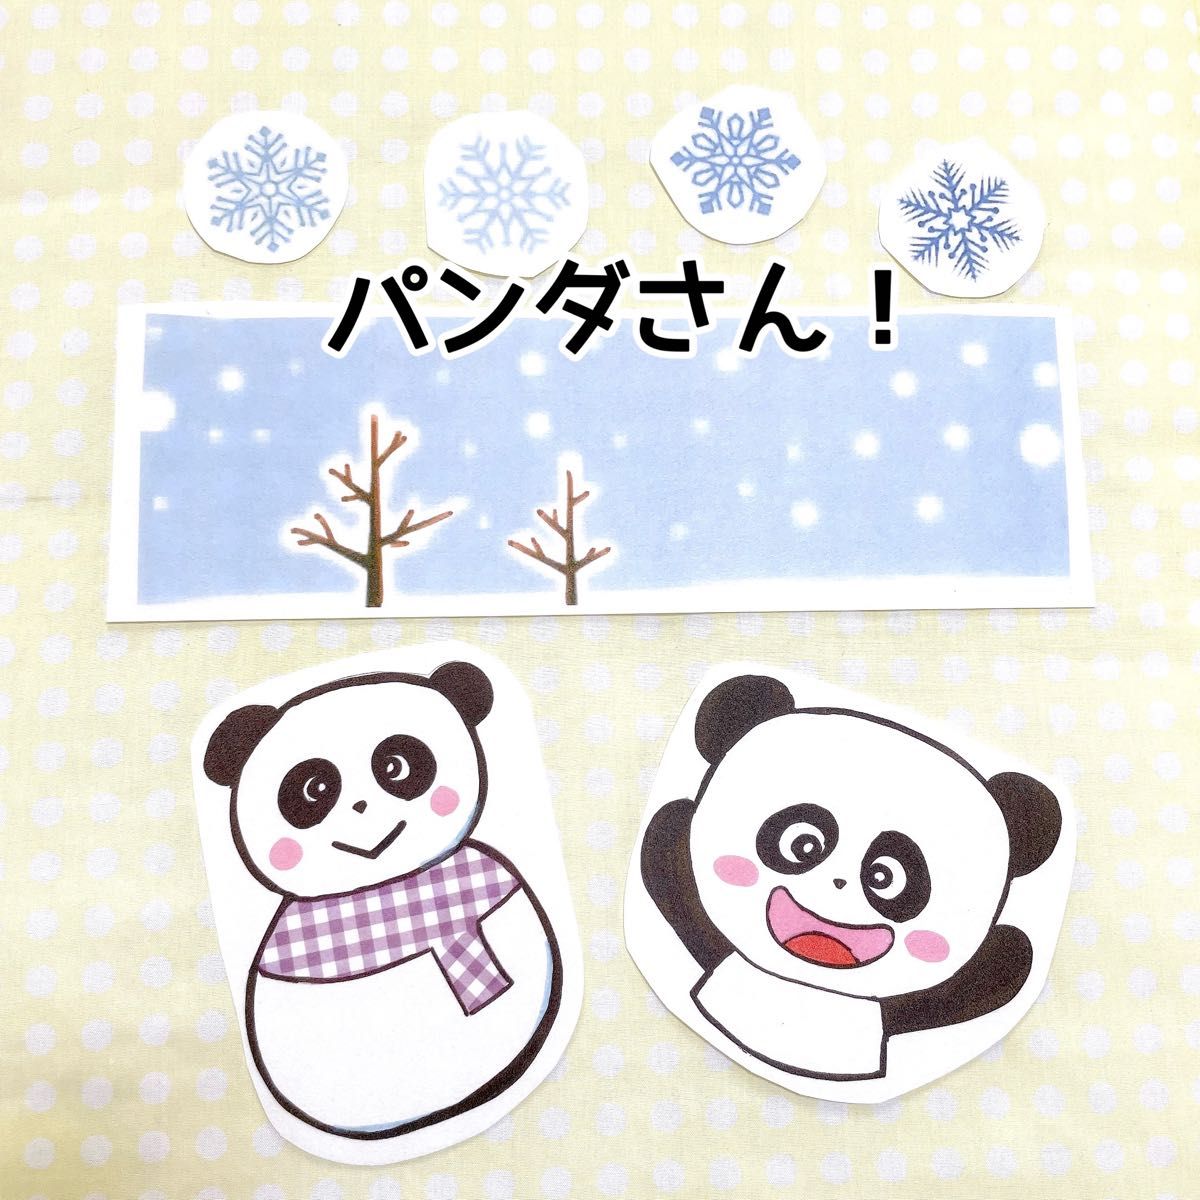 《パネルシアター》だれのゆきだるま動物クイズ大人気オリジナルイラスト雪遊び誕生日季節